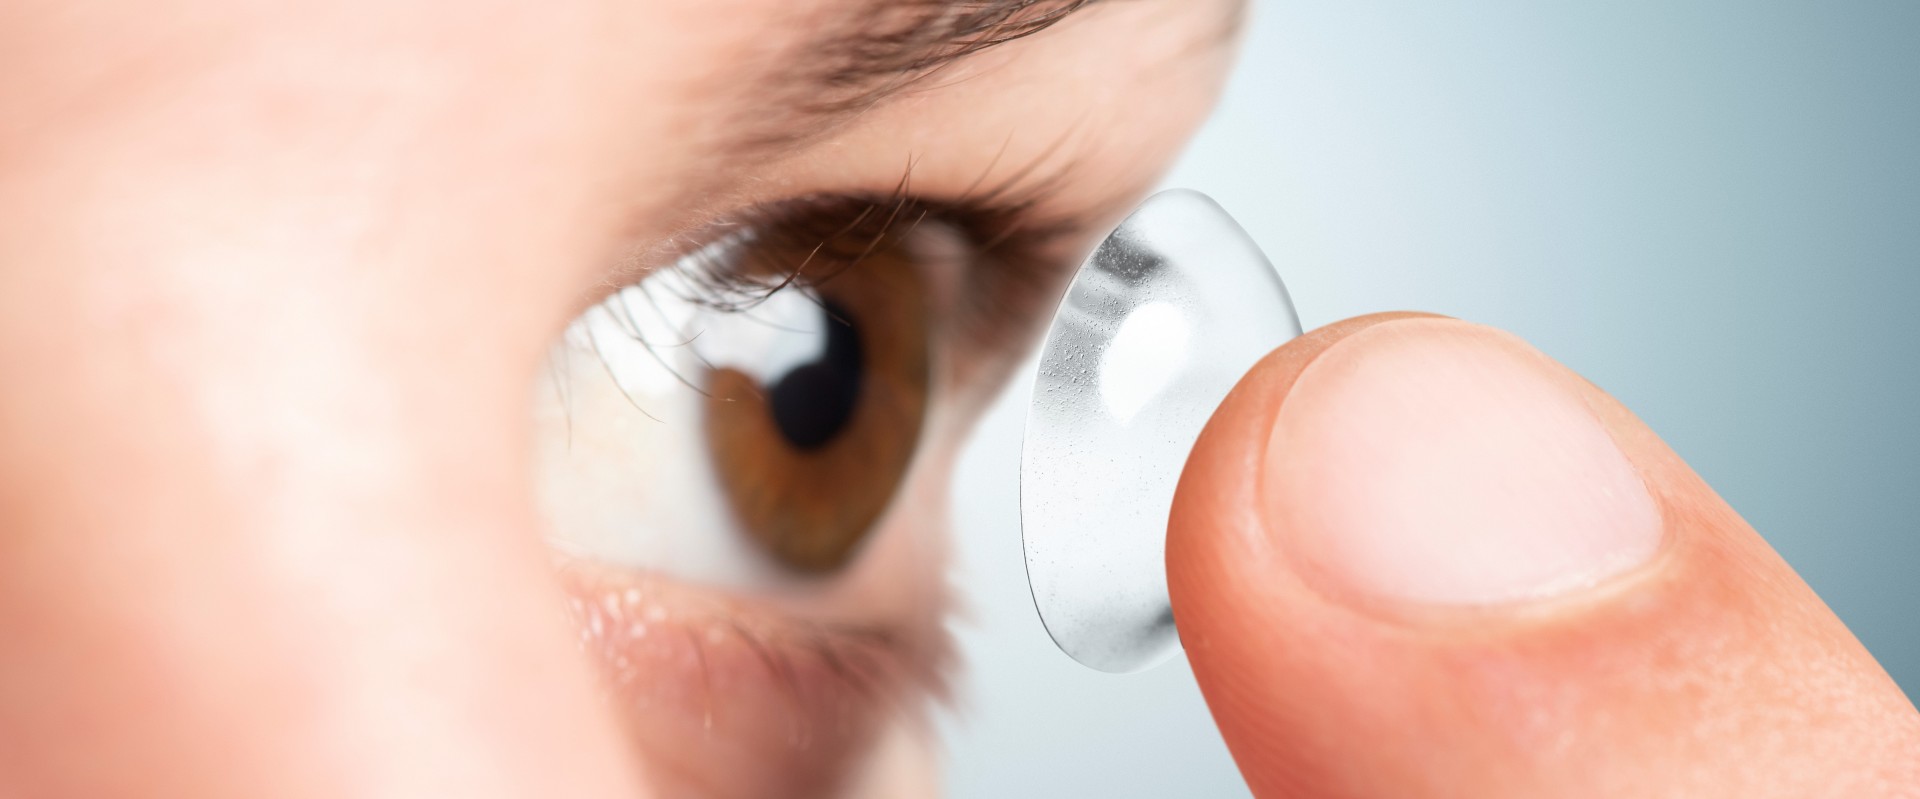 коррекция зрения контактными линзами при дальнозоркости